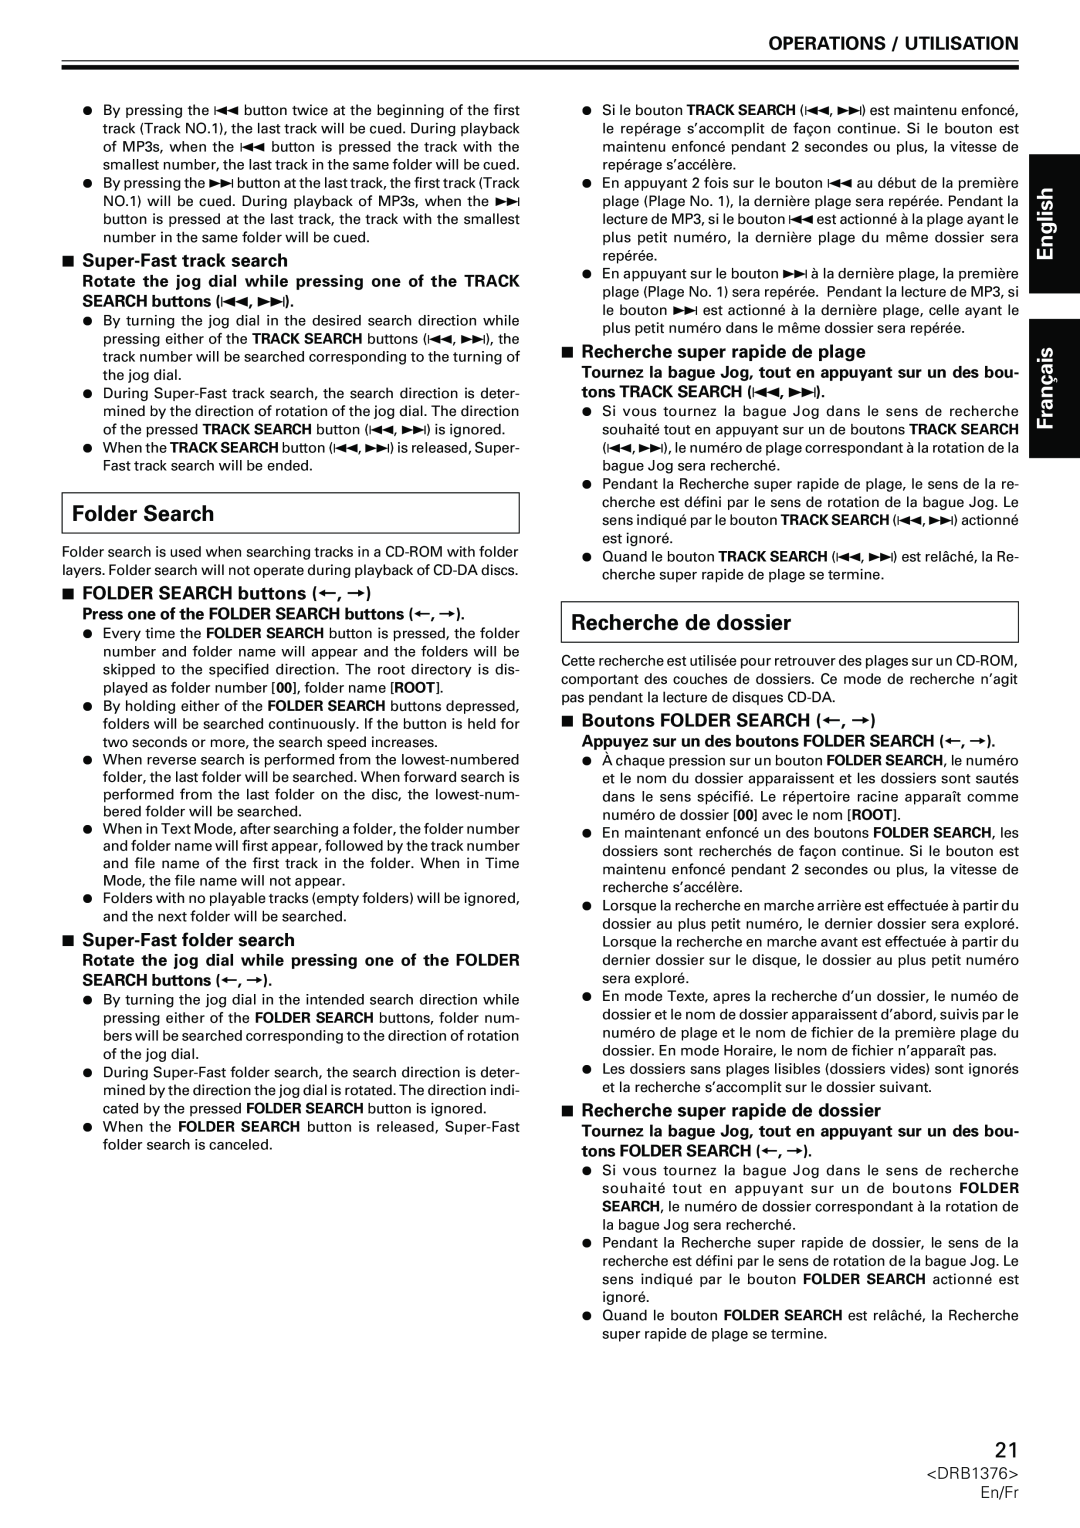 Pioneer CDJ-200 manual Folder Search, Recherche de dossier, 7Super-Fasttrack search, 7FOLDER SEARCH buttons +, =, English 